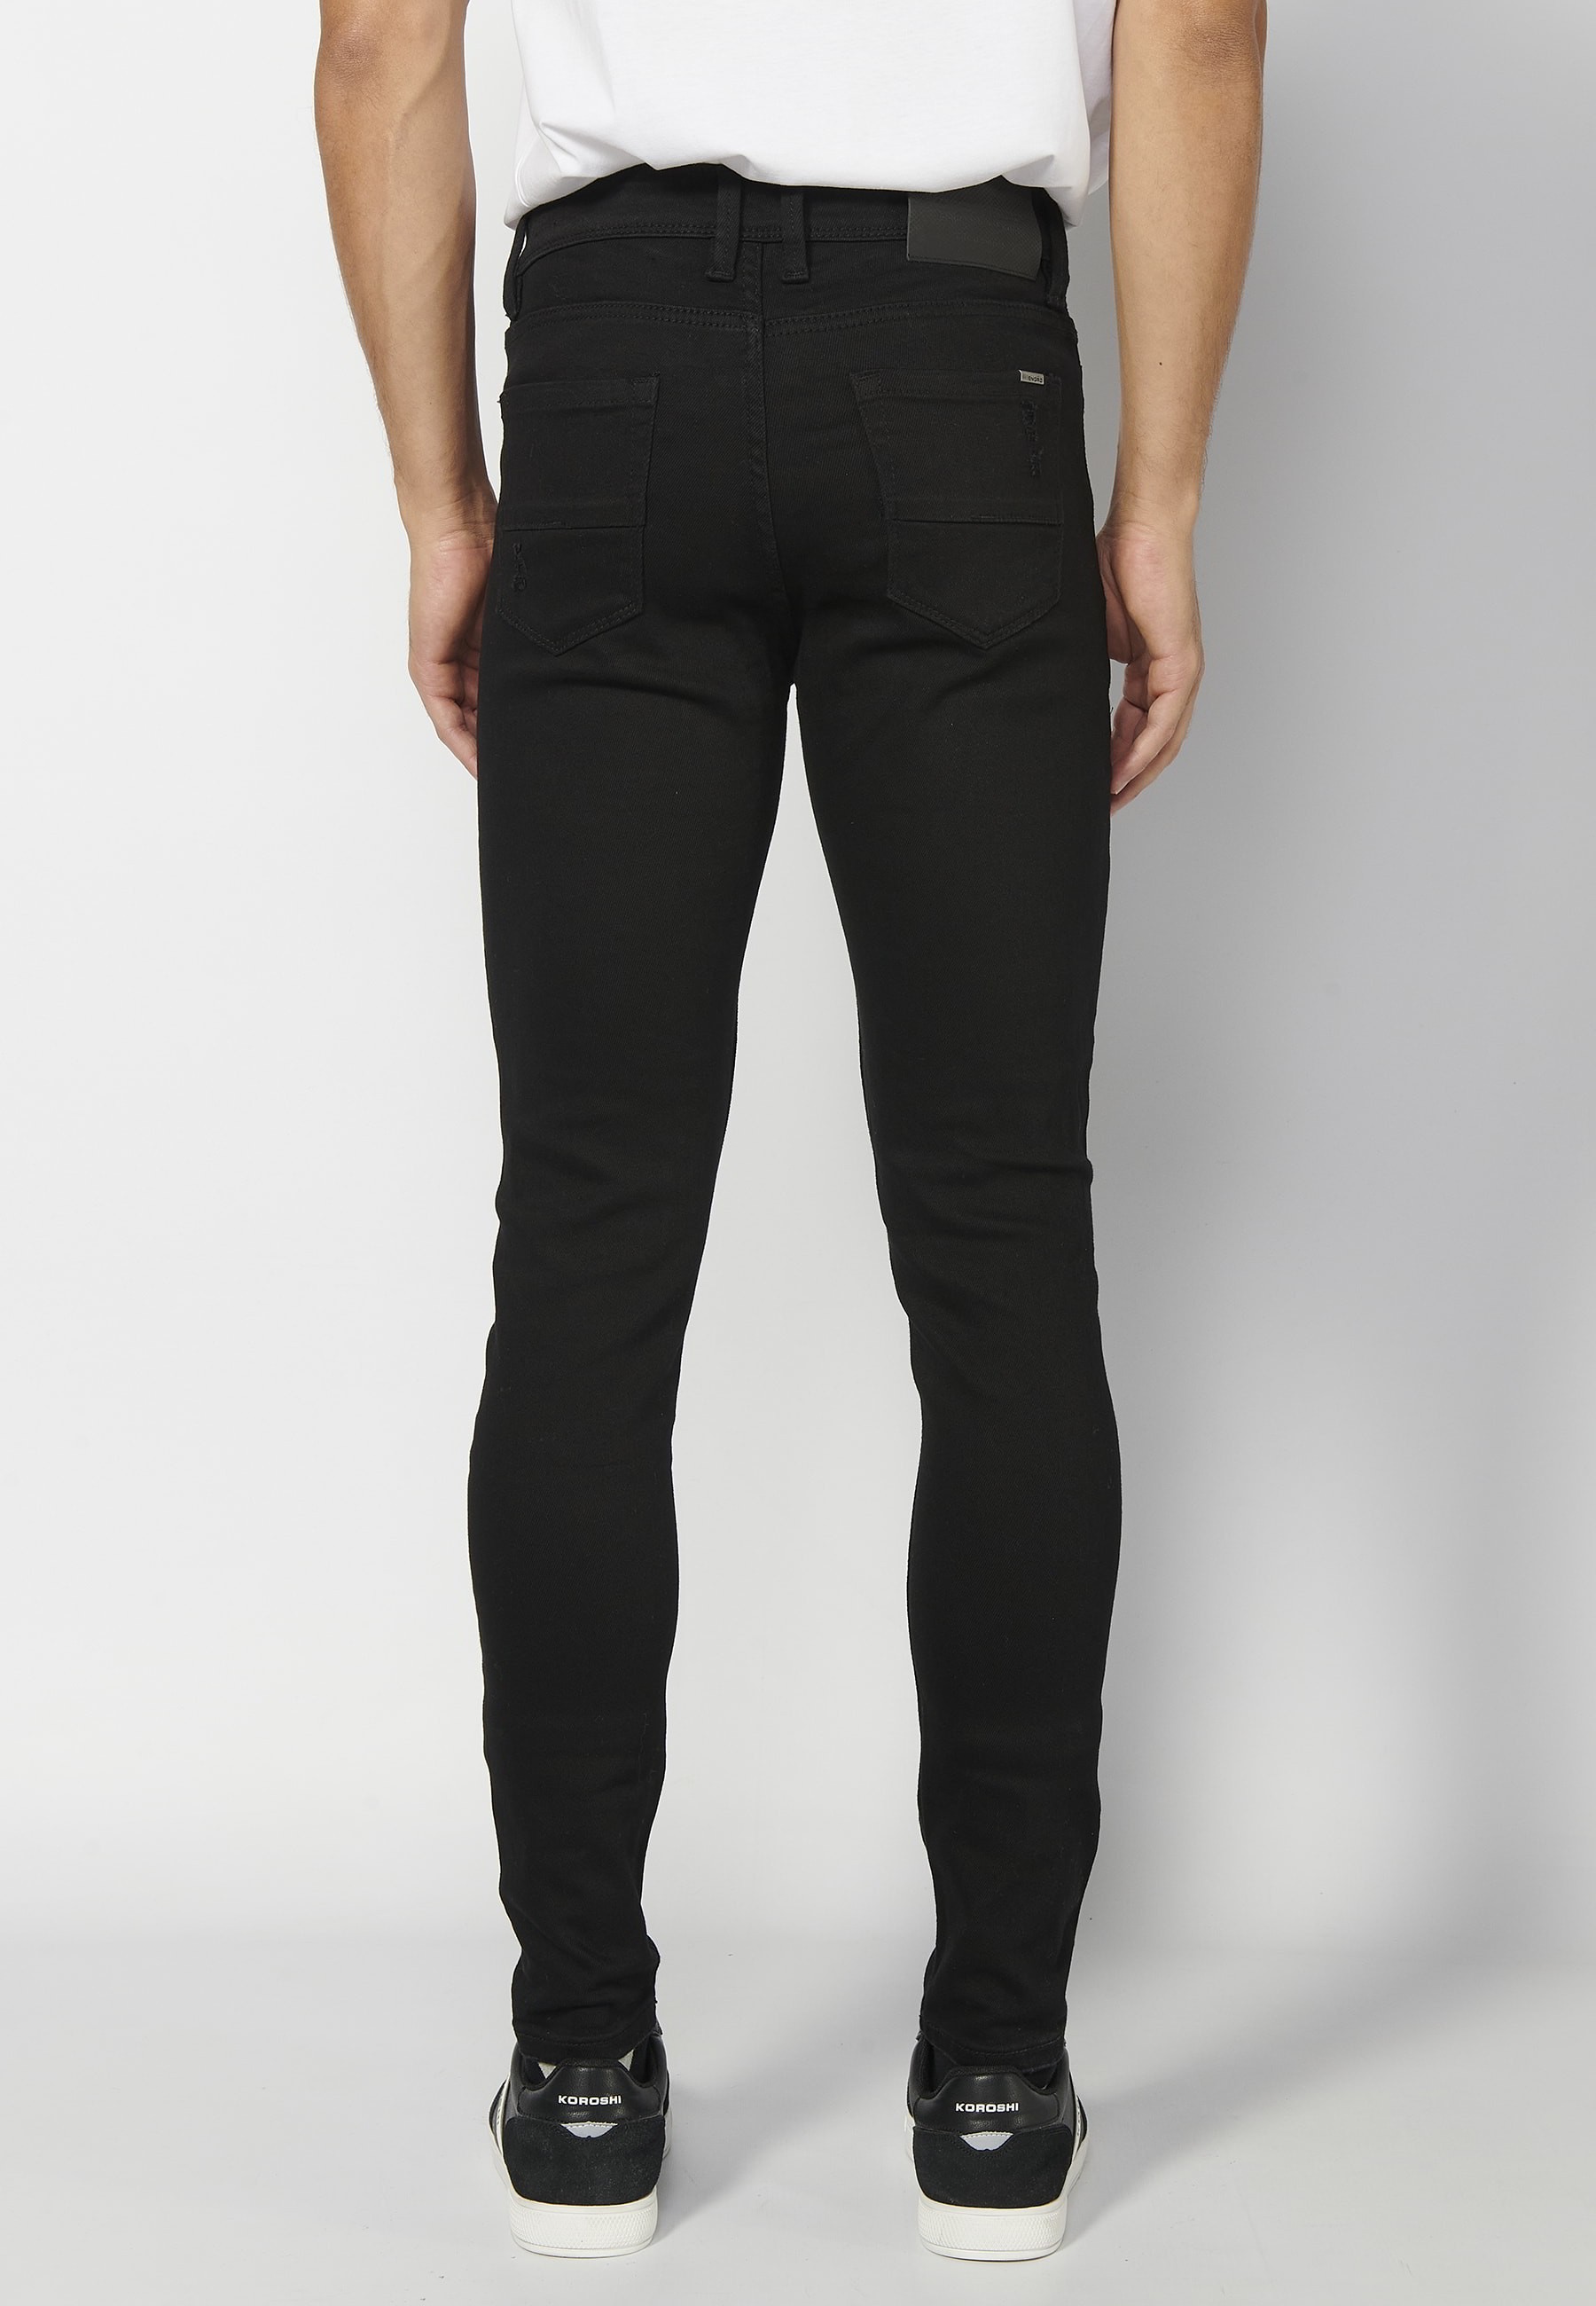 Pantalons llargs super skinny, amb cinc butxaques, color Negre per a Home 4